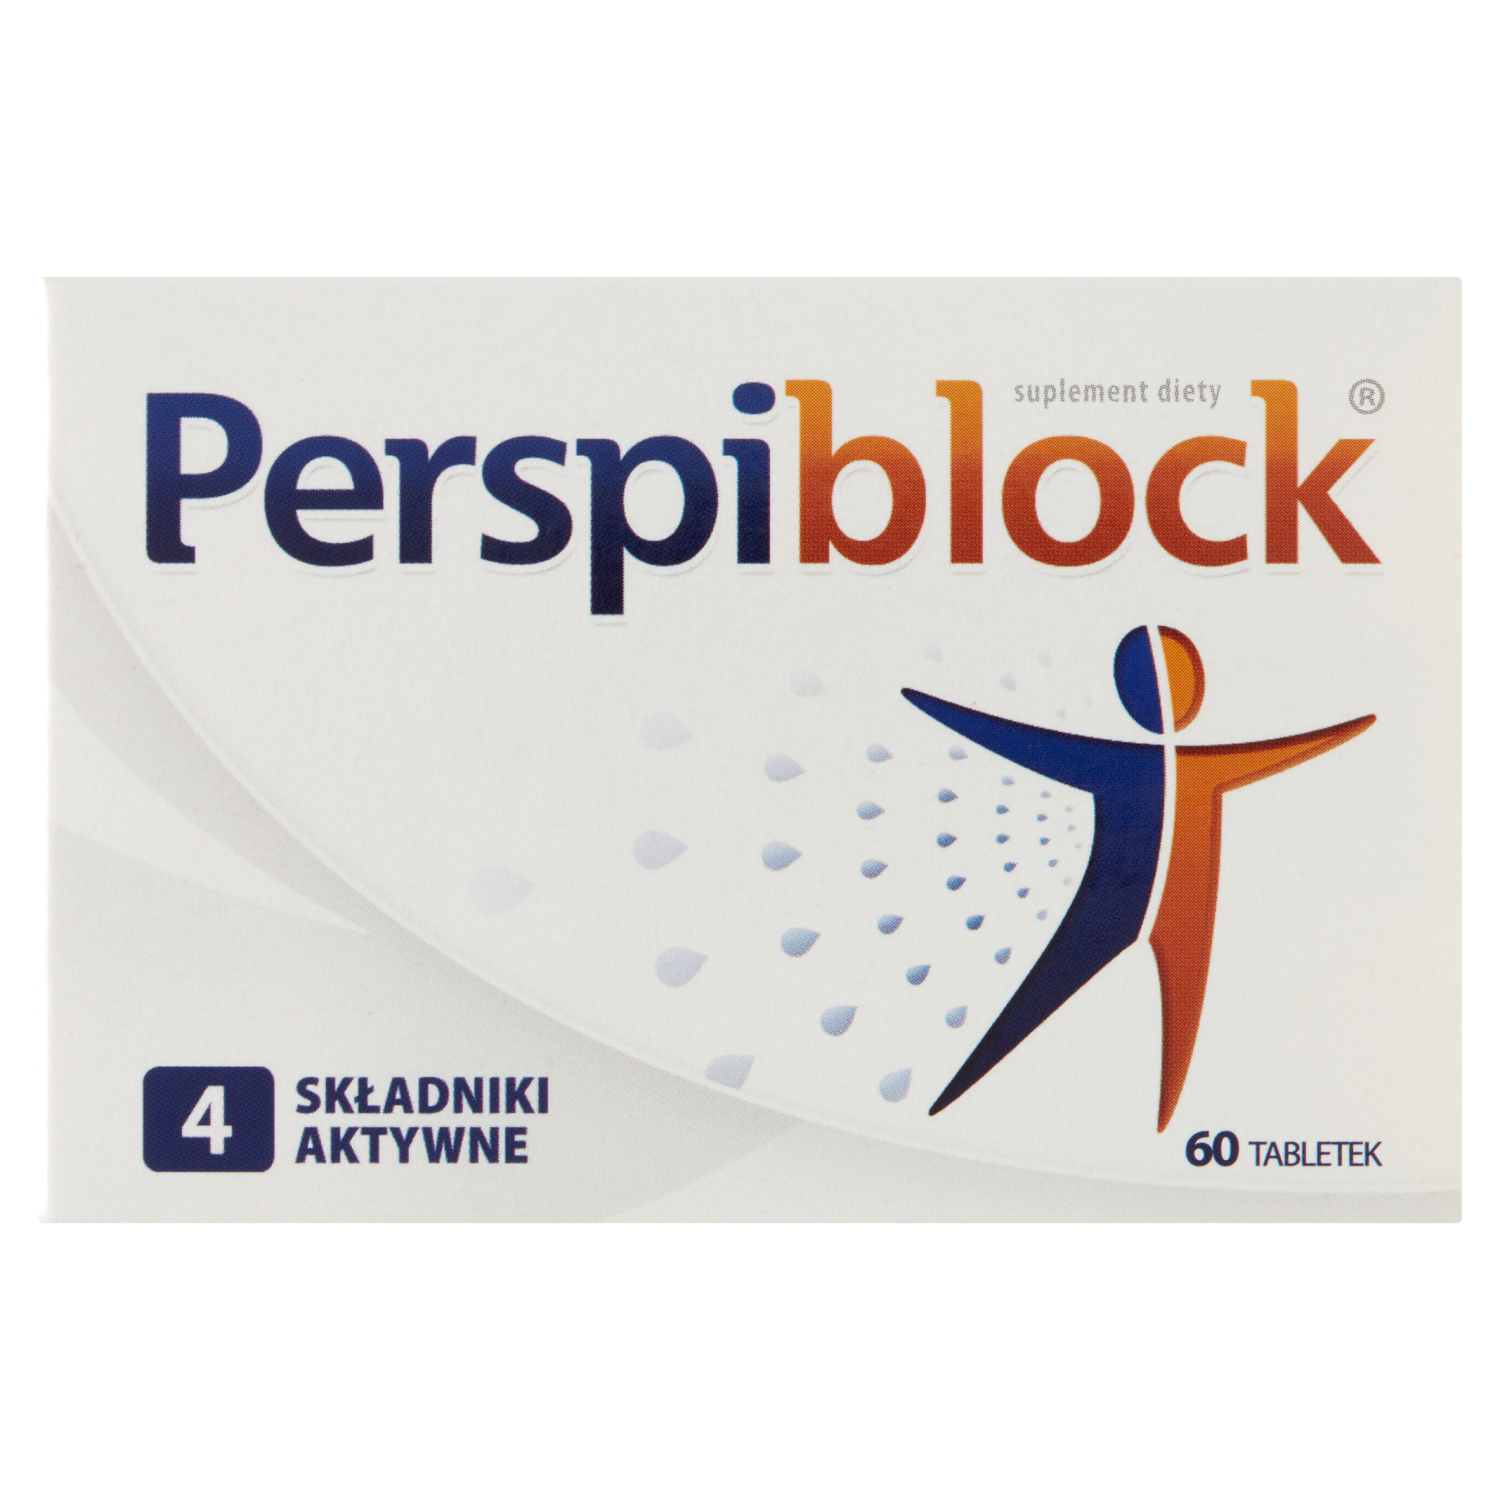 linea detox биологически активная добавка 60 таблеток 1 упаковка Perspiblock биологически активная добавка, 60 таблеток/1 упаковка